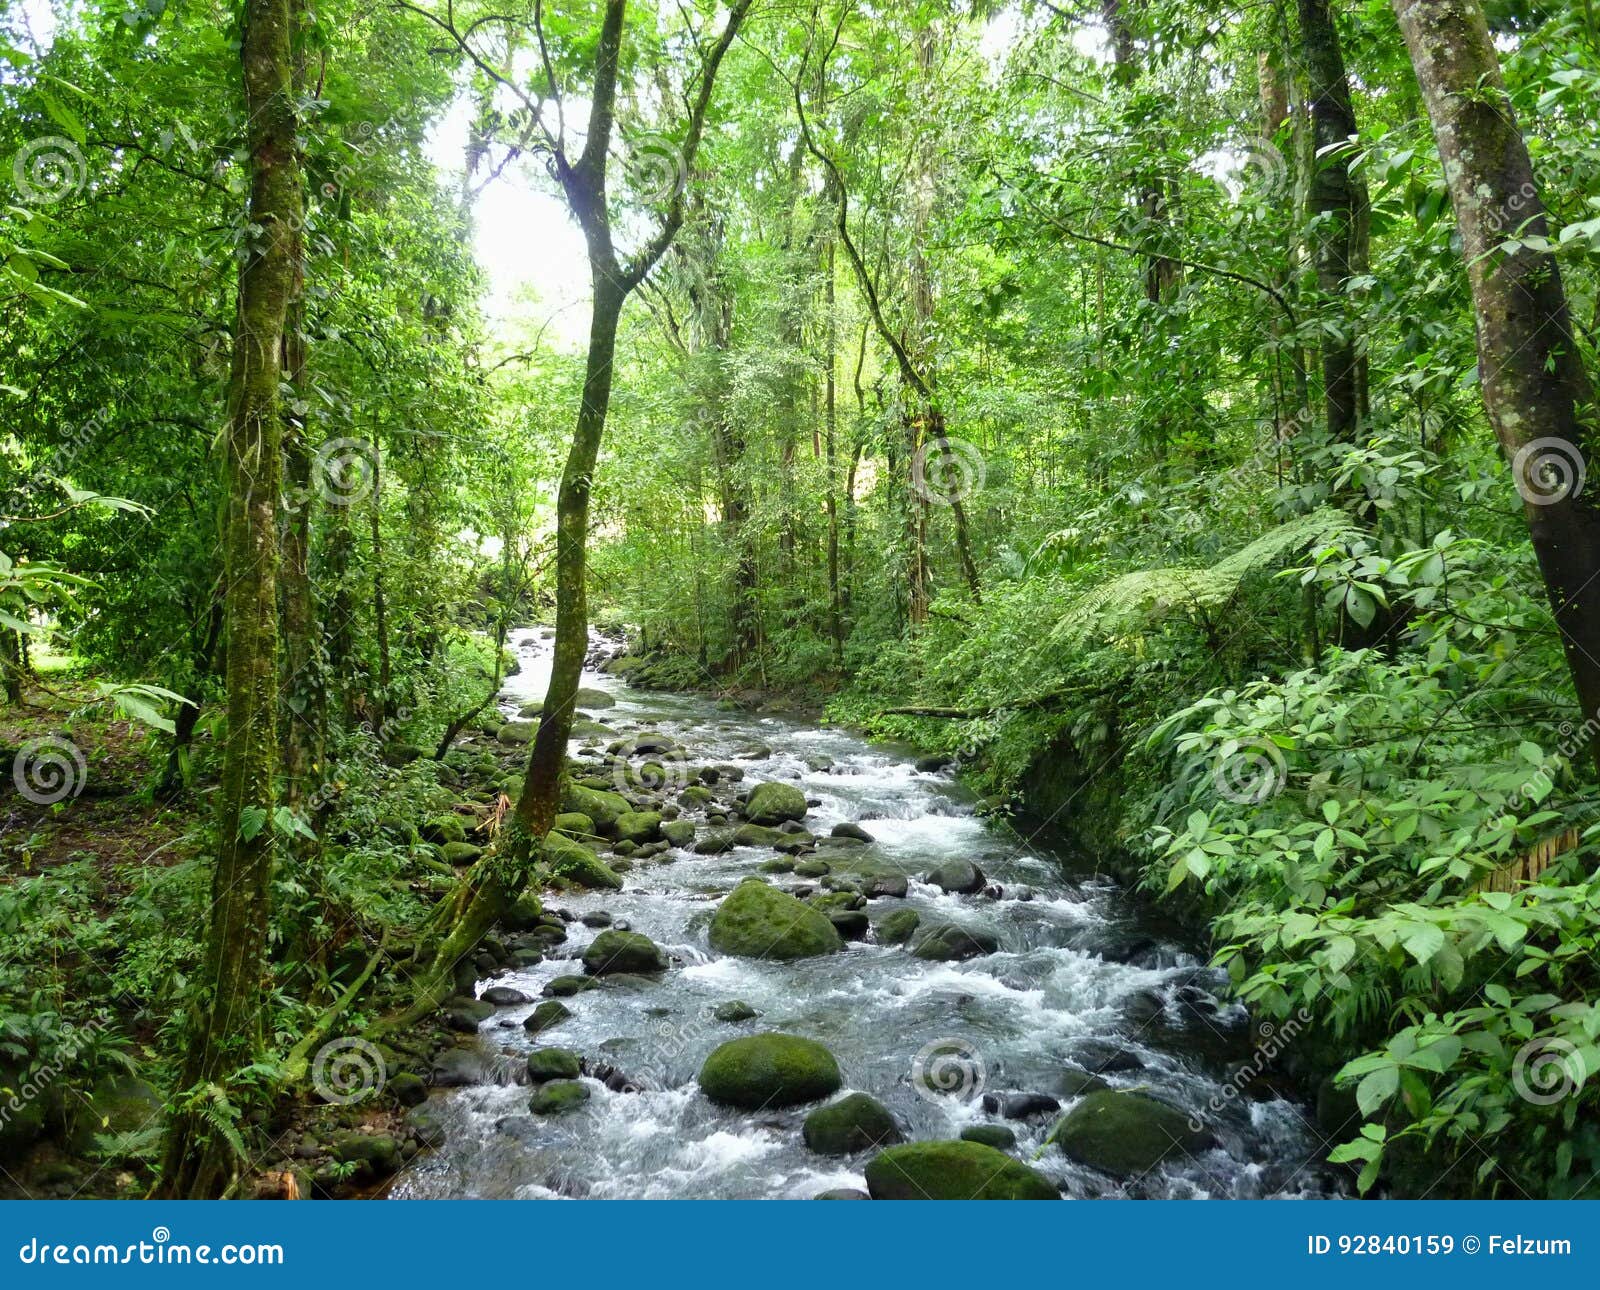 magic river in guapiles, limÃÂ³n , costa rica. rainforest